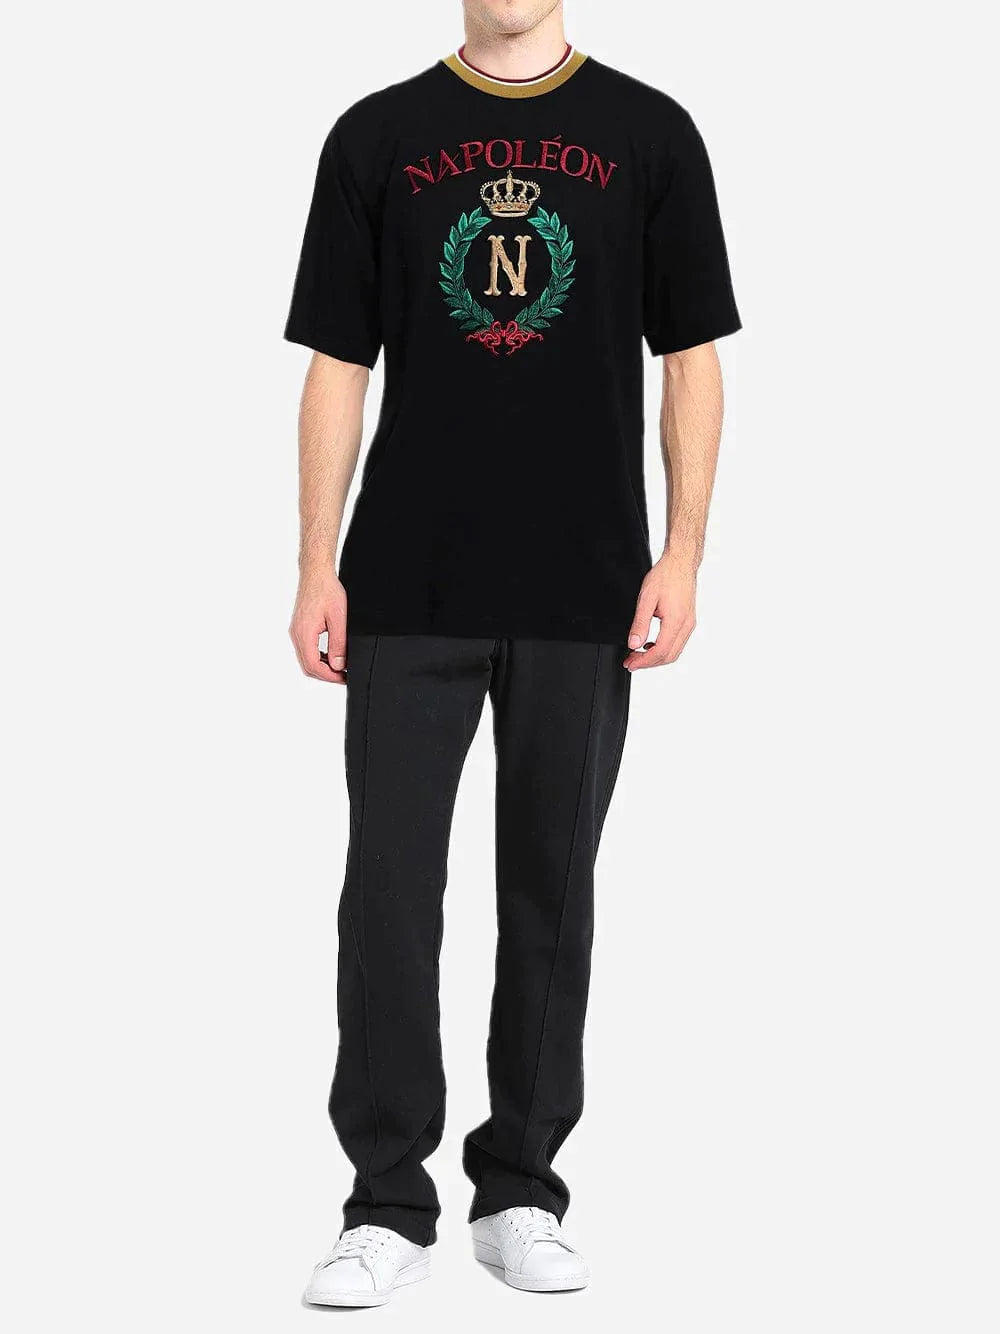 Dolce & Gabbana Napoleon Print T-Shirt